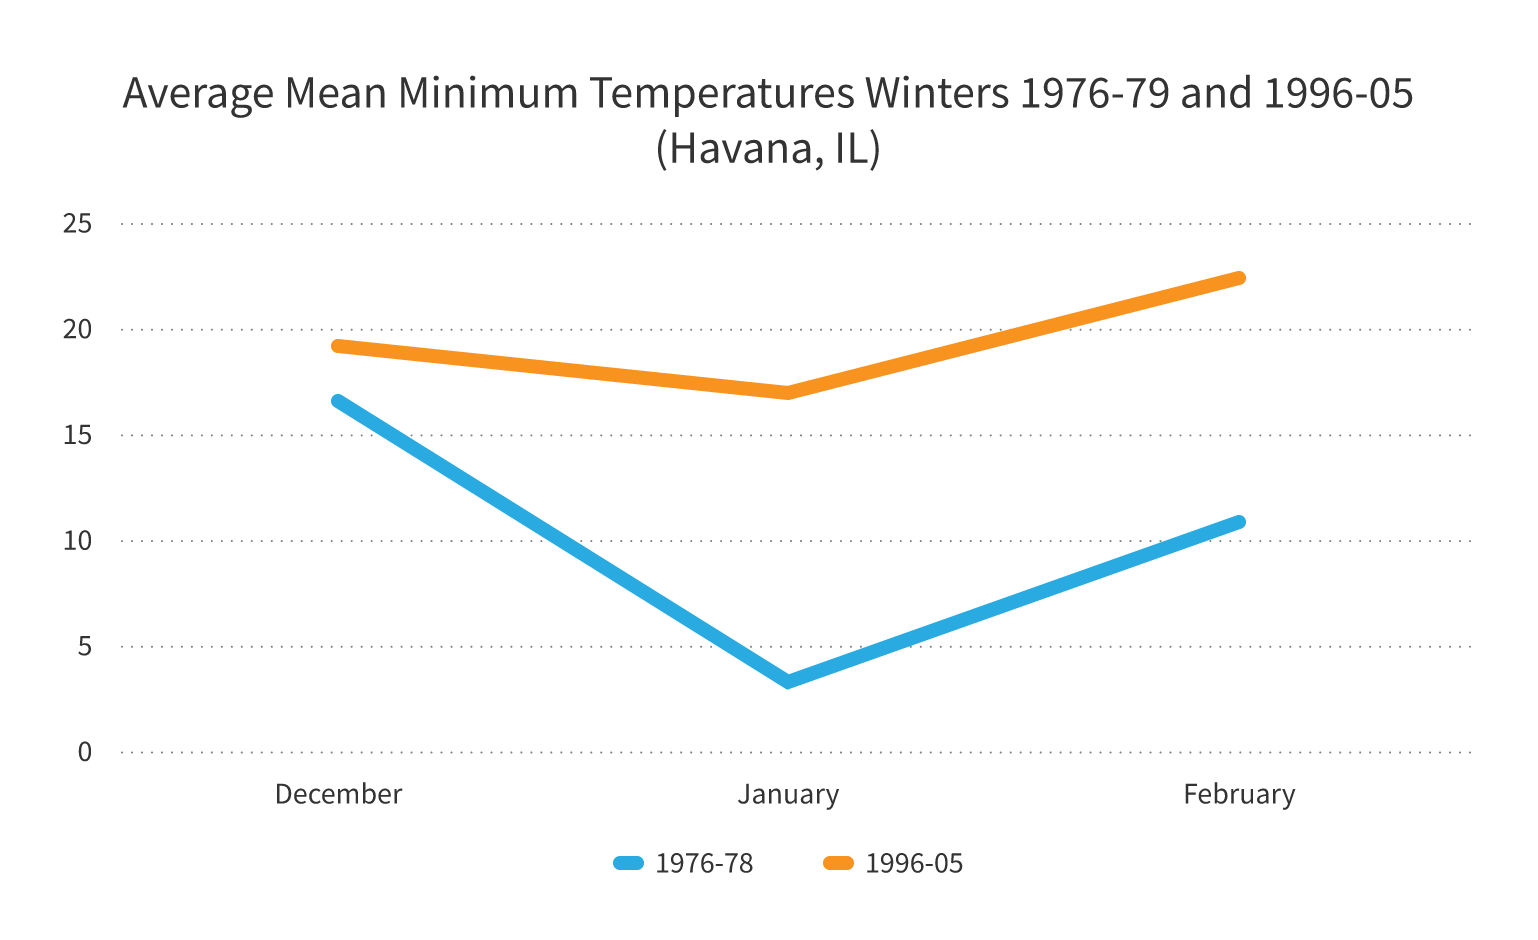 Average Mean Minimum Temperature chart